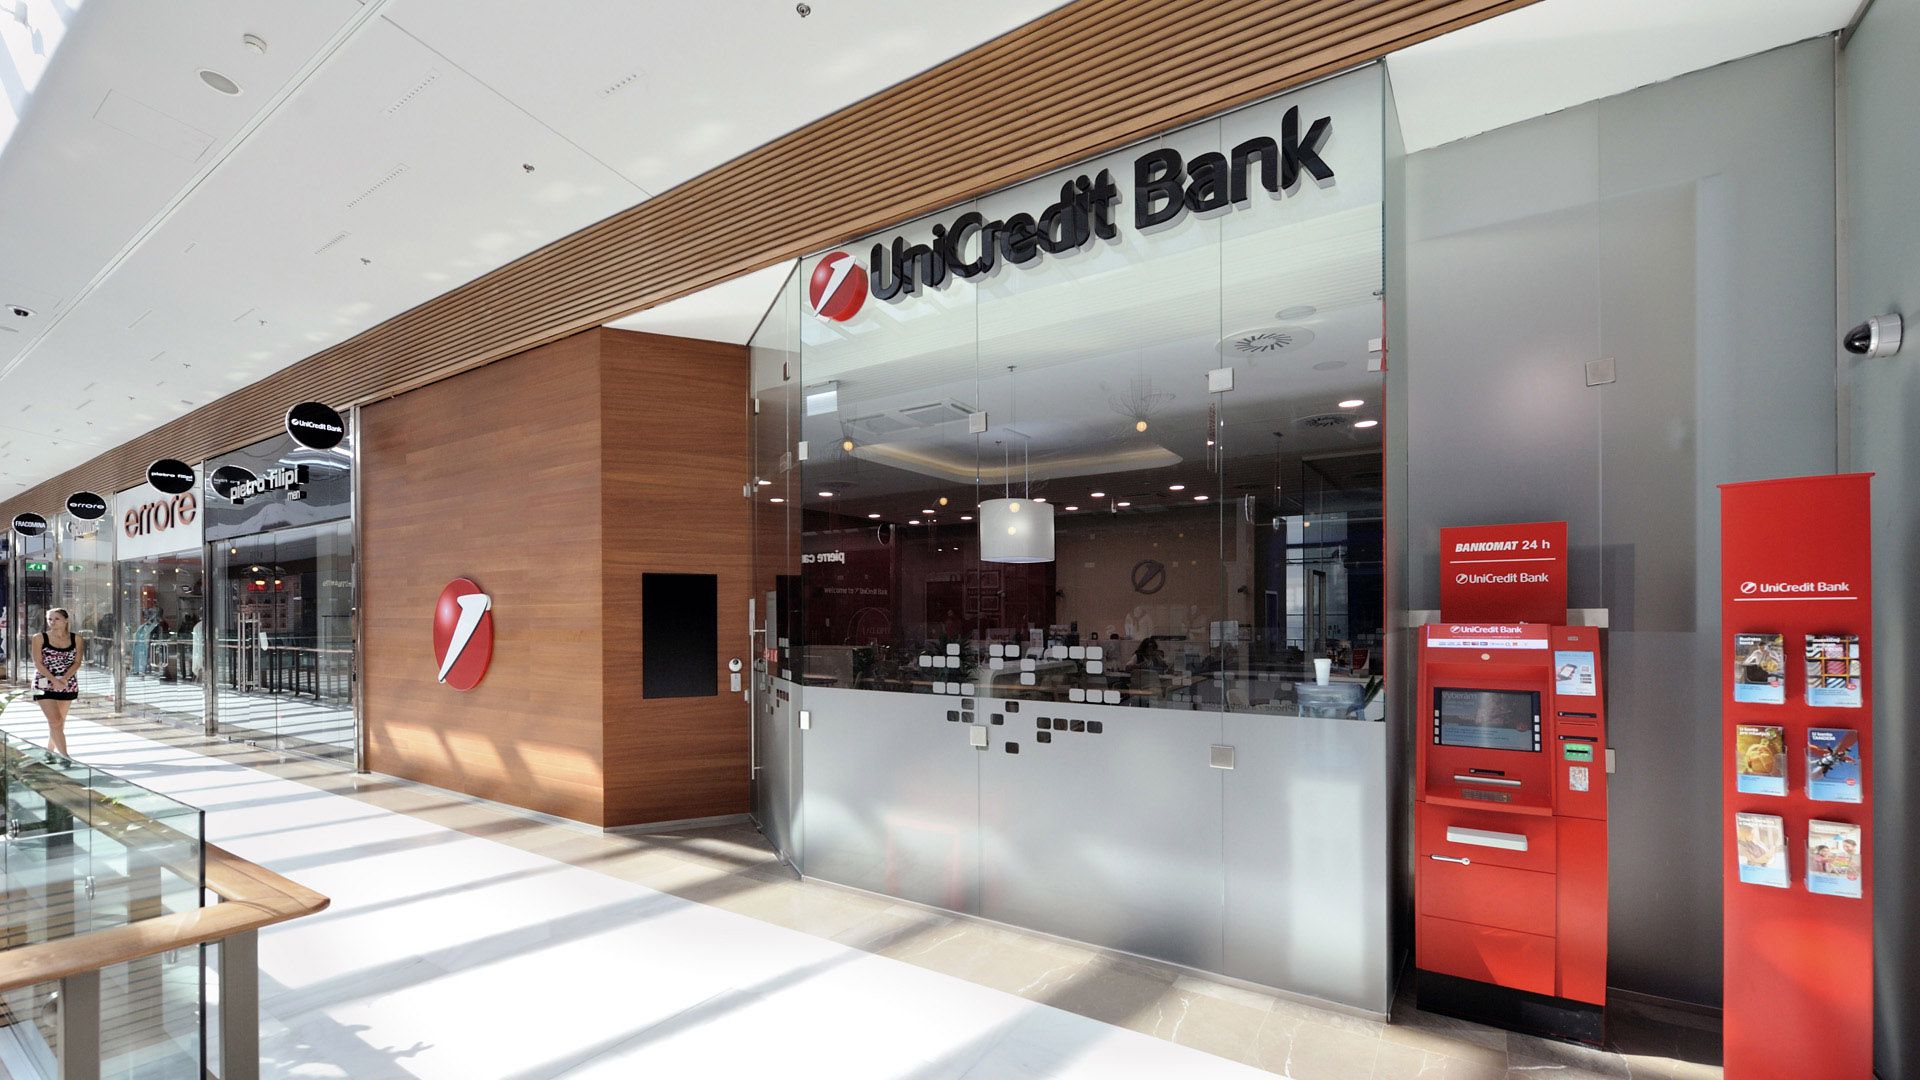 Pohľad na pobočku UniCredit bank z priestorov nákupného centra